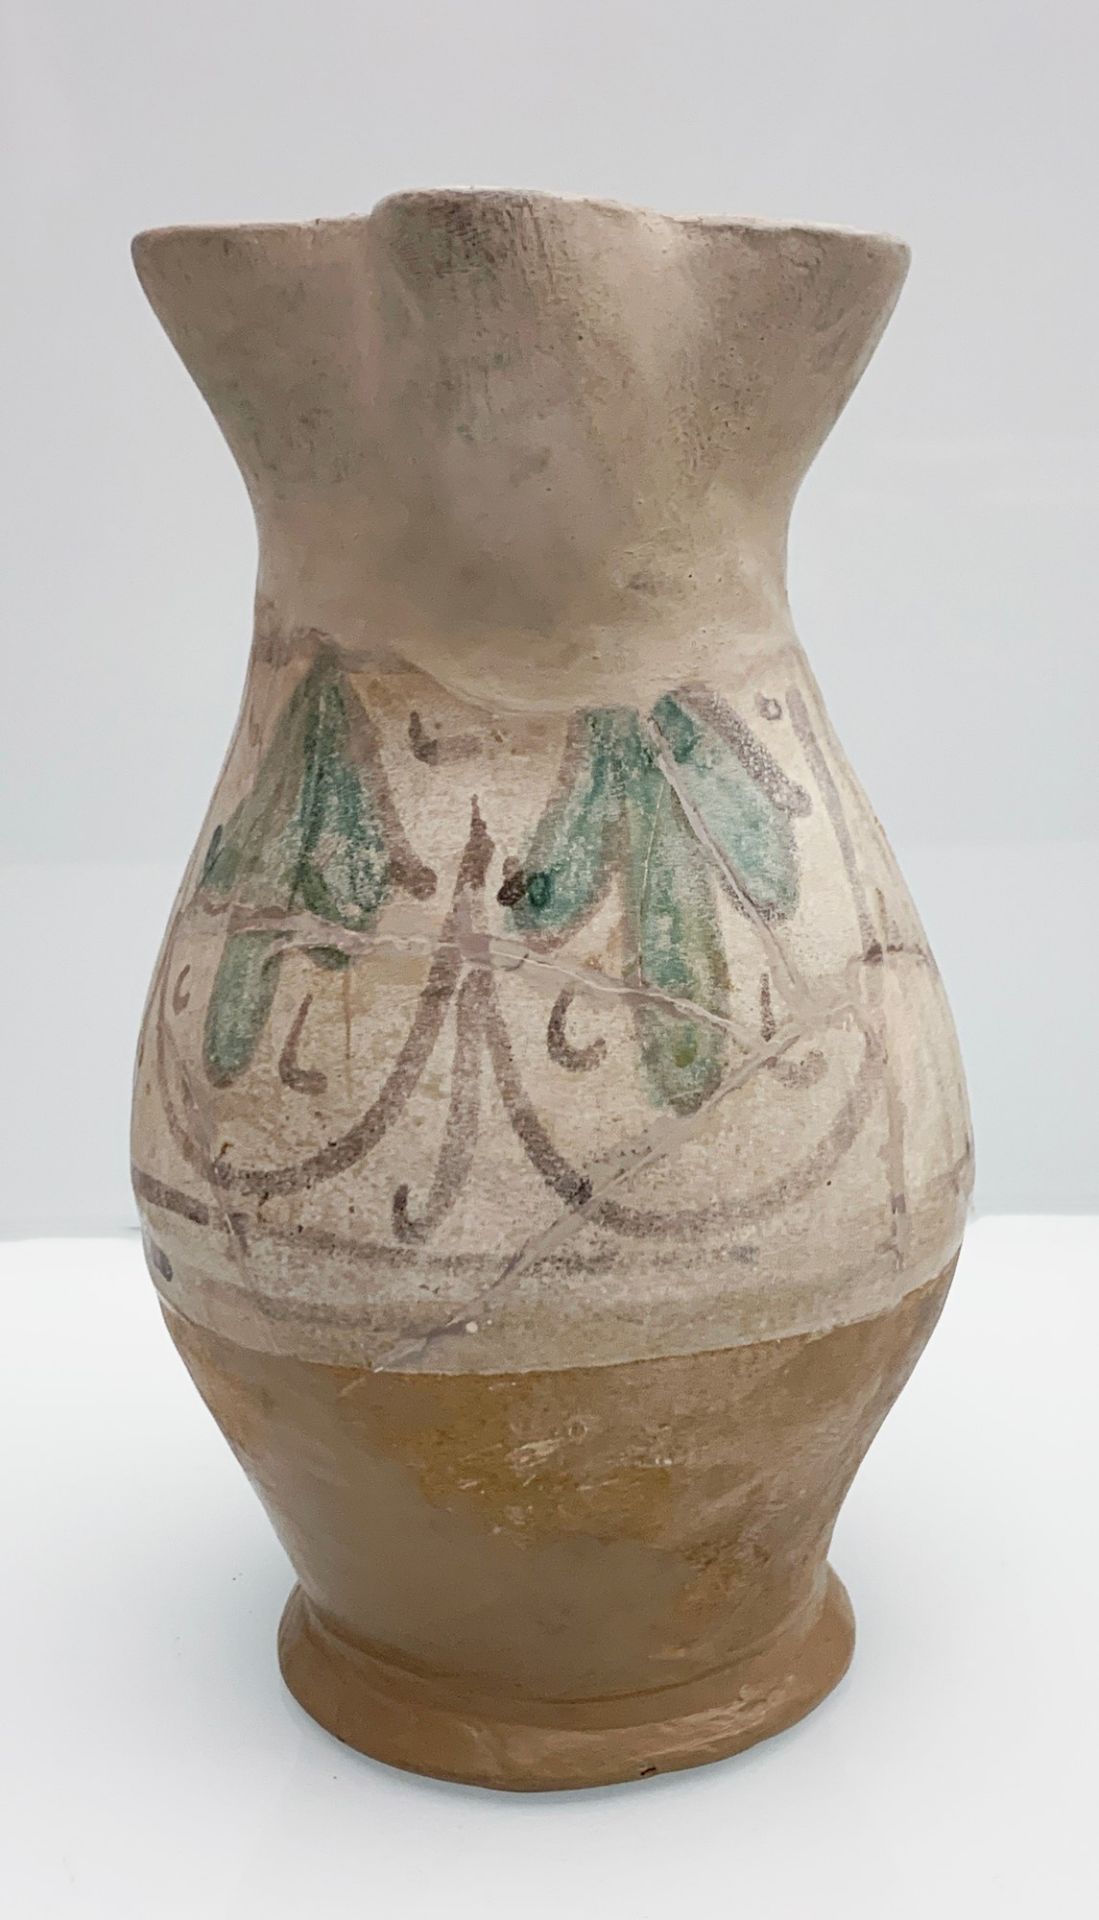 Boccale in maiolica arcaica dal corpo piriforme. Manifattura senese (Montalcino) dell'ultima metà de - Image 2 of 2